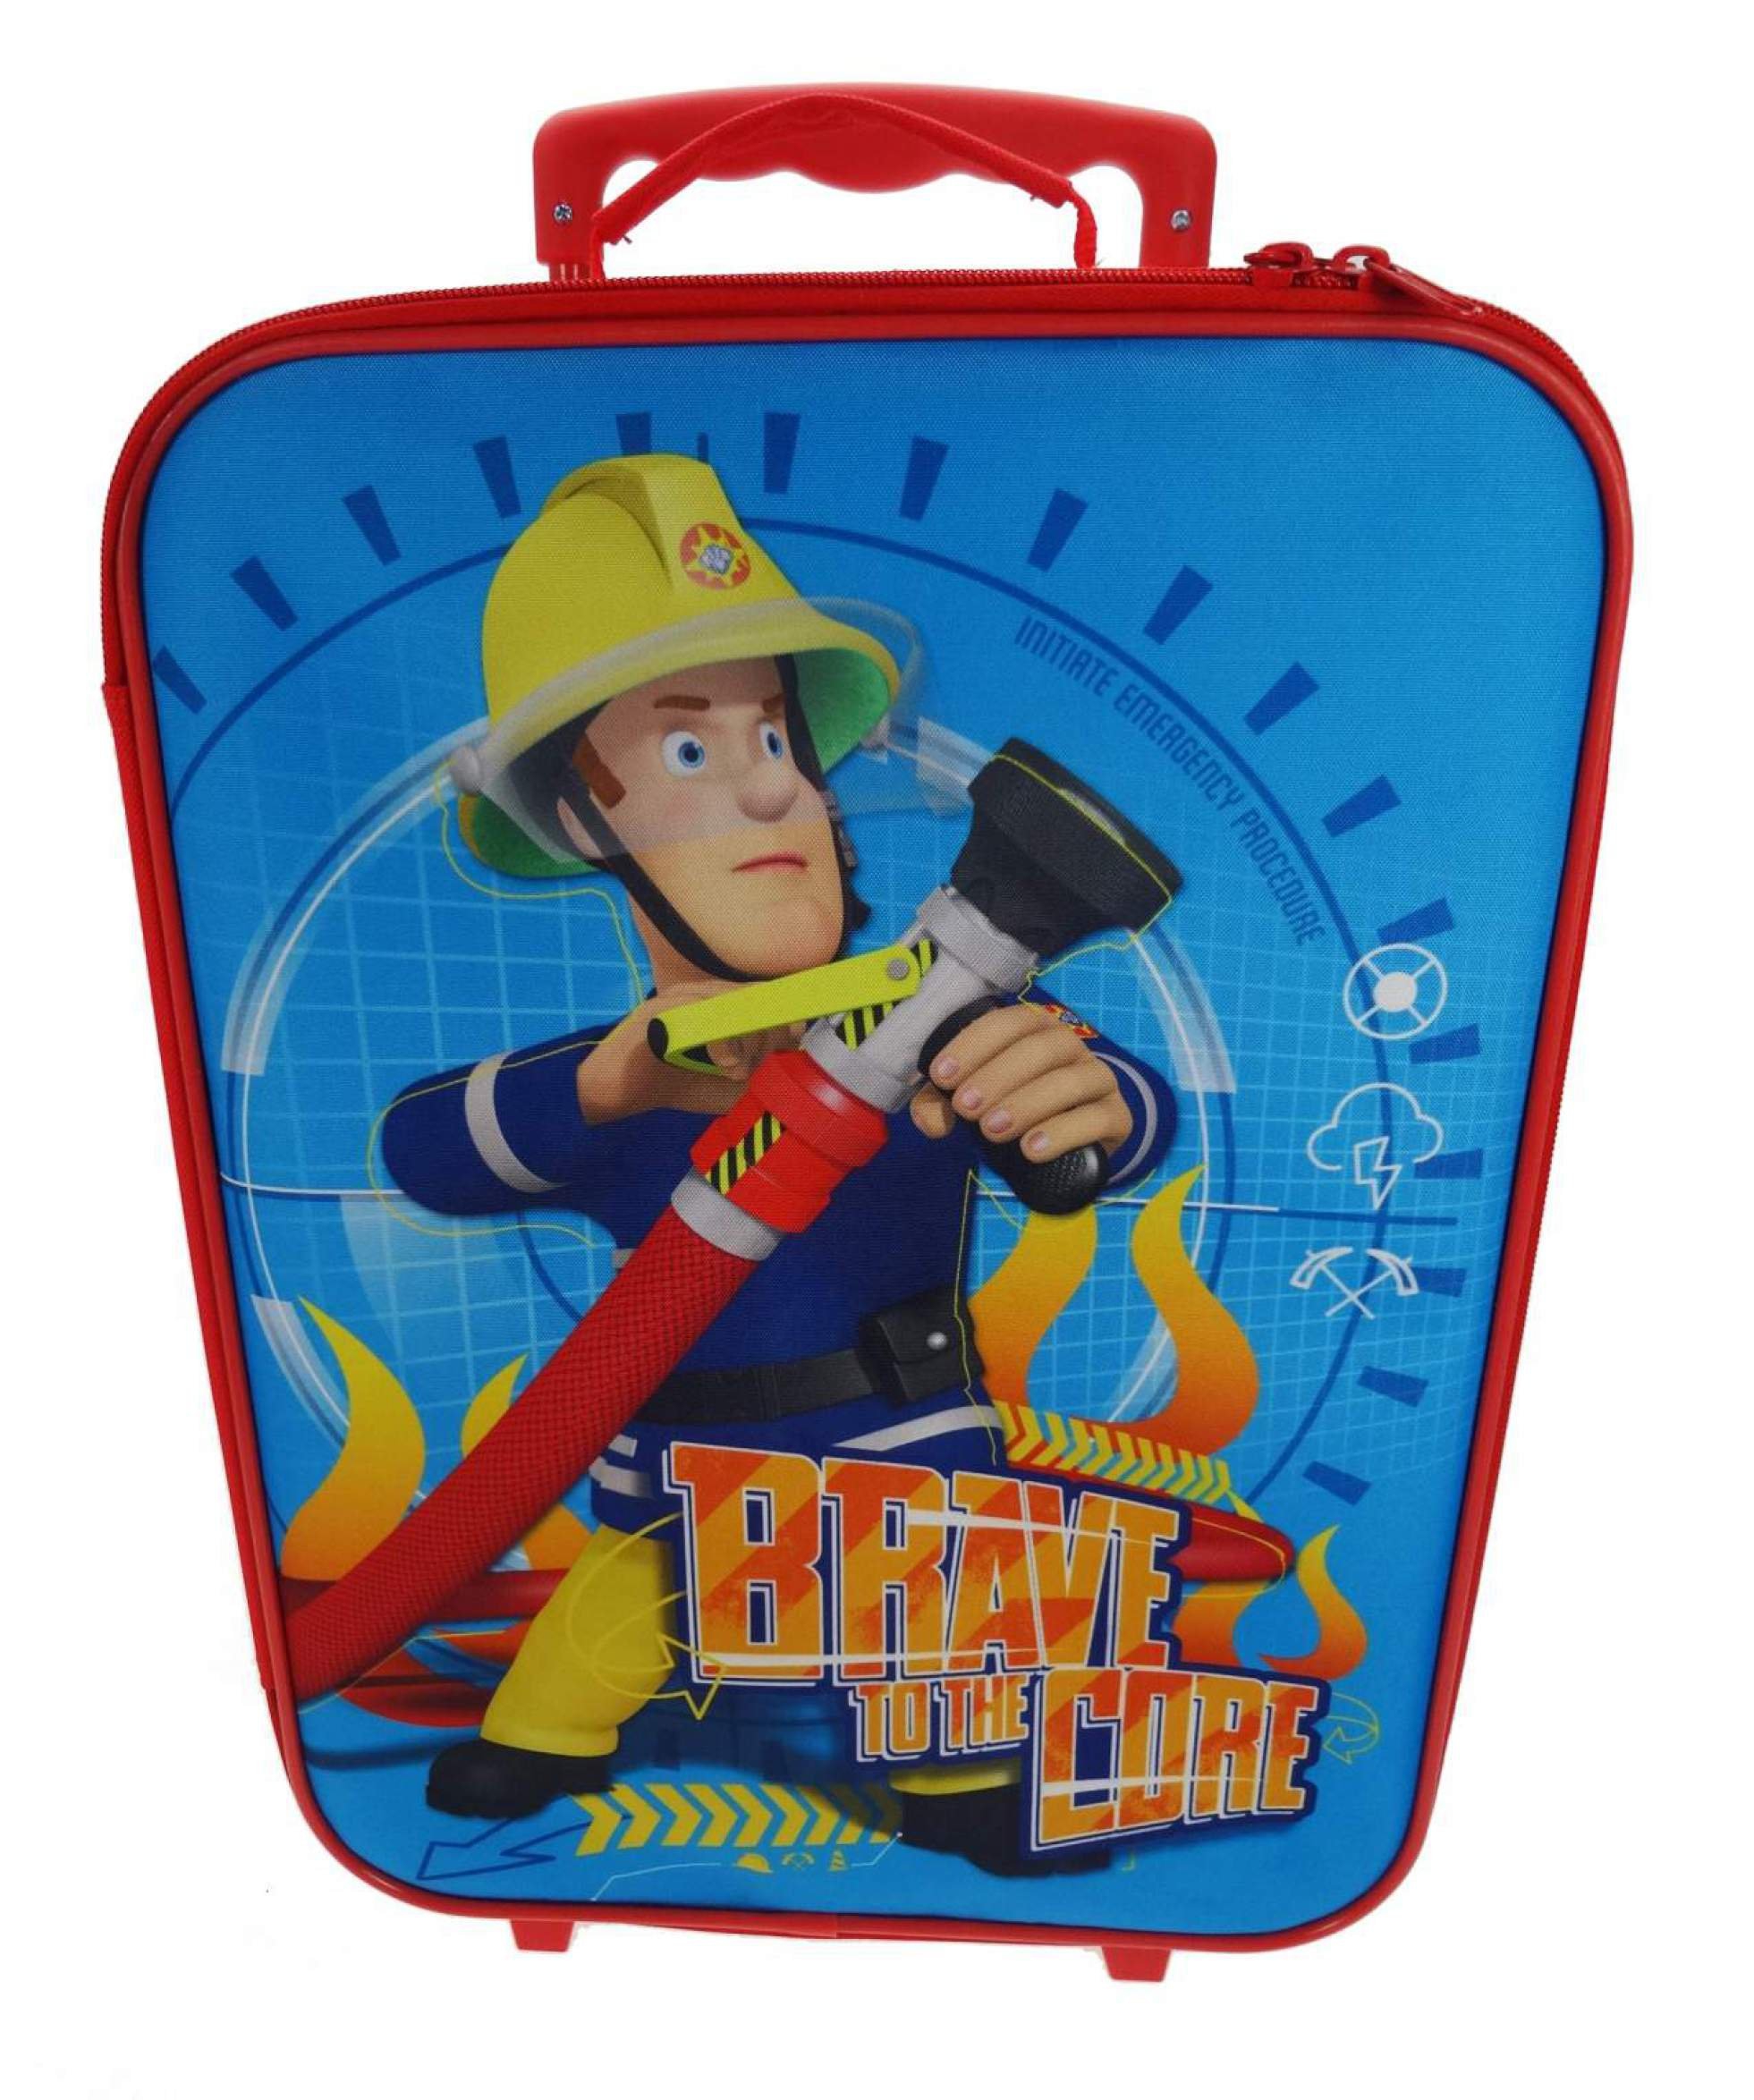 Fireman Sam 'Brave To The Core' Luggage Bag Set